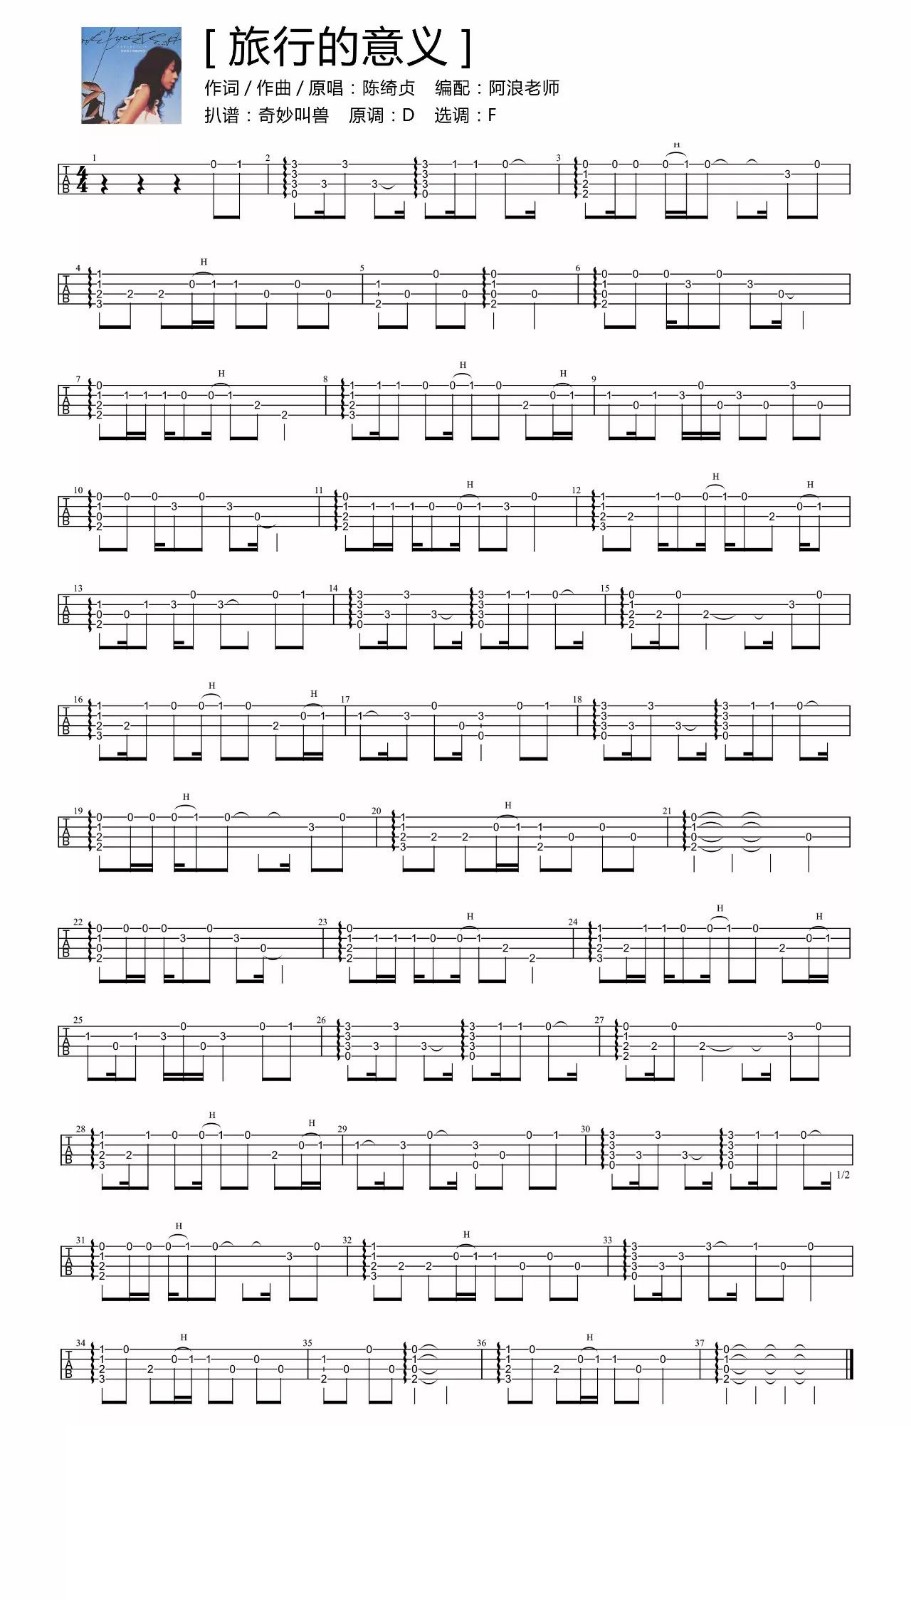 阿浪老师版《旅行的意义》 ukulele指弹曲谱-C大调音乐网